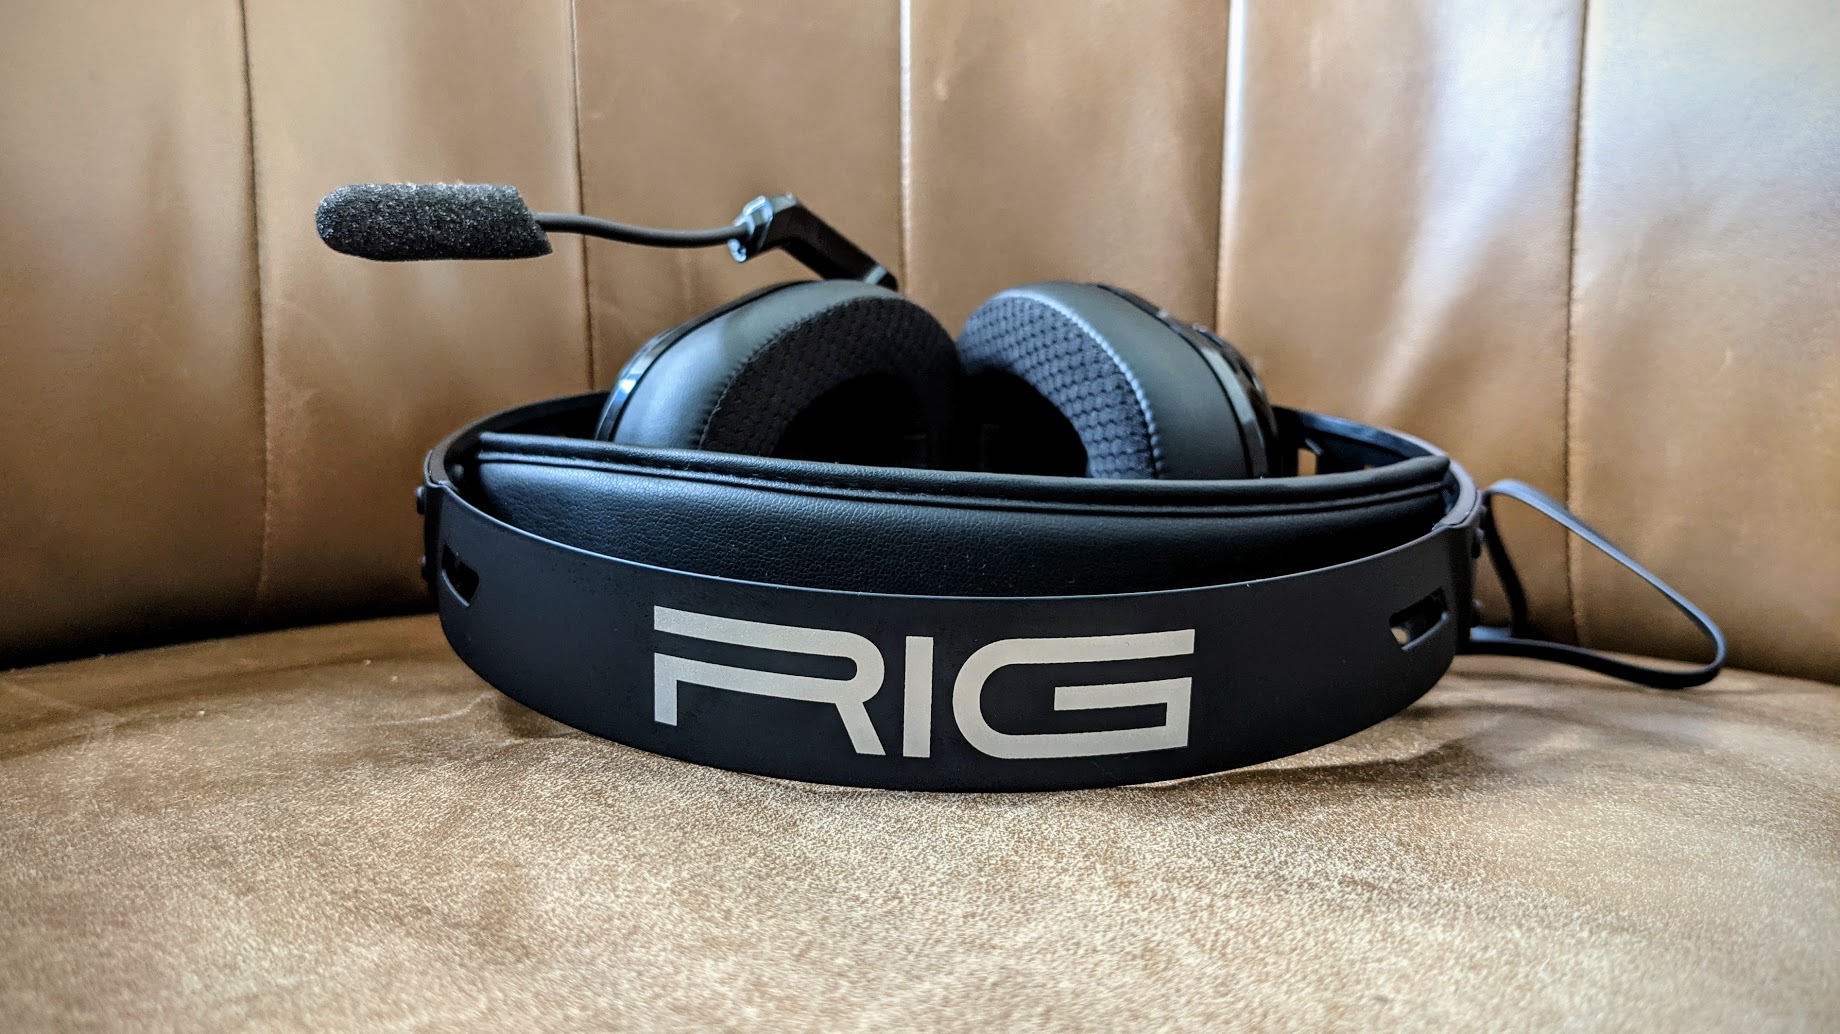 RIG 500 PRO HX Gen 2 menawarkan headband baja yang bagus